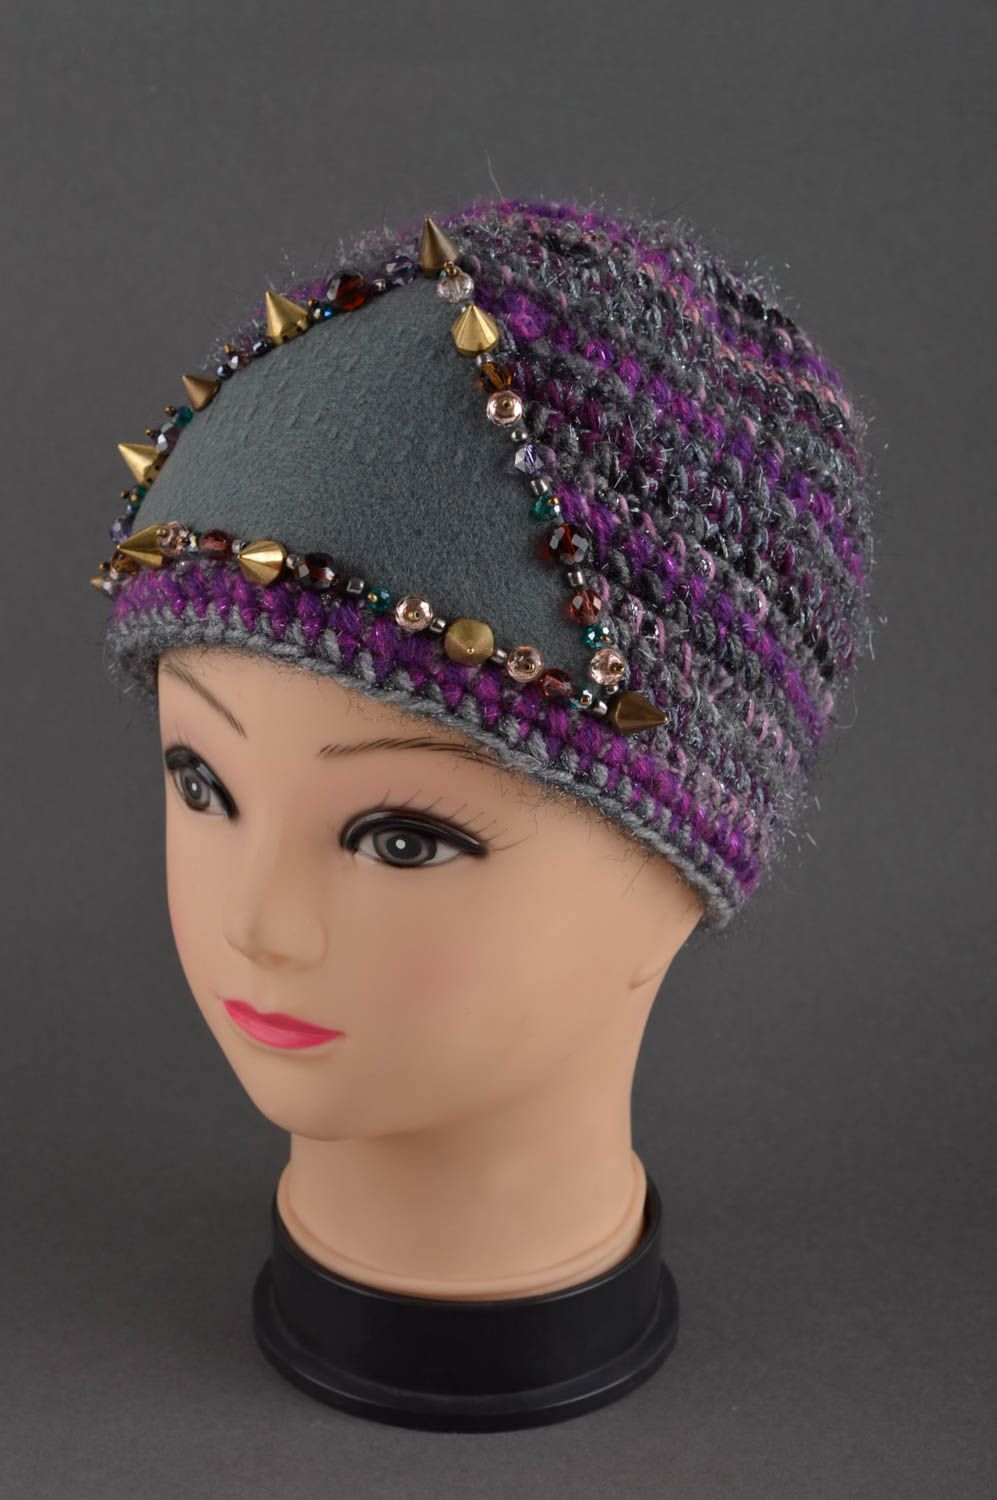 Handmade warm hat designer accessory for girls woolen hat warm hat unusual gift photo 1